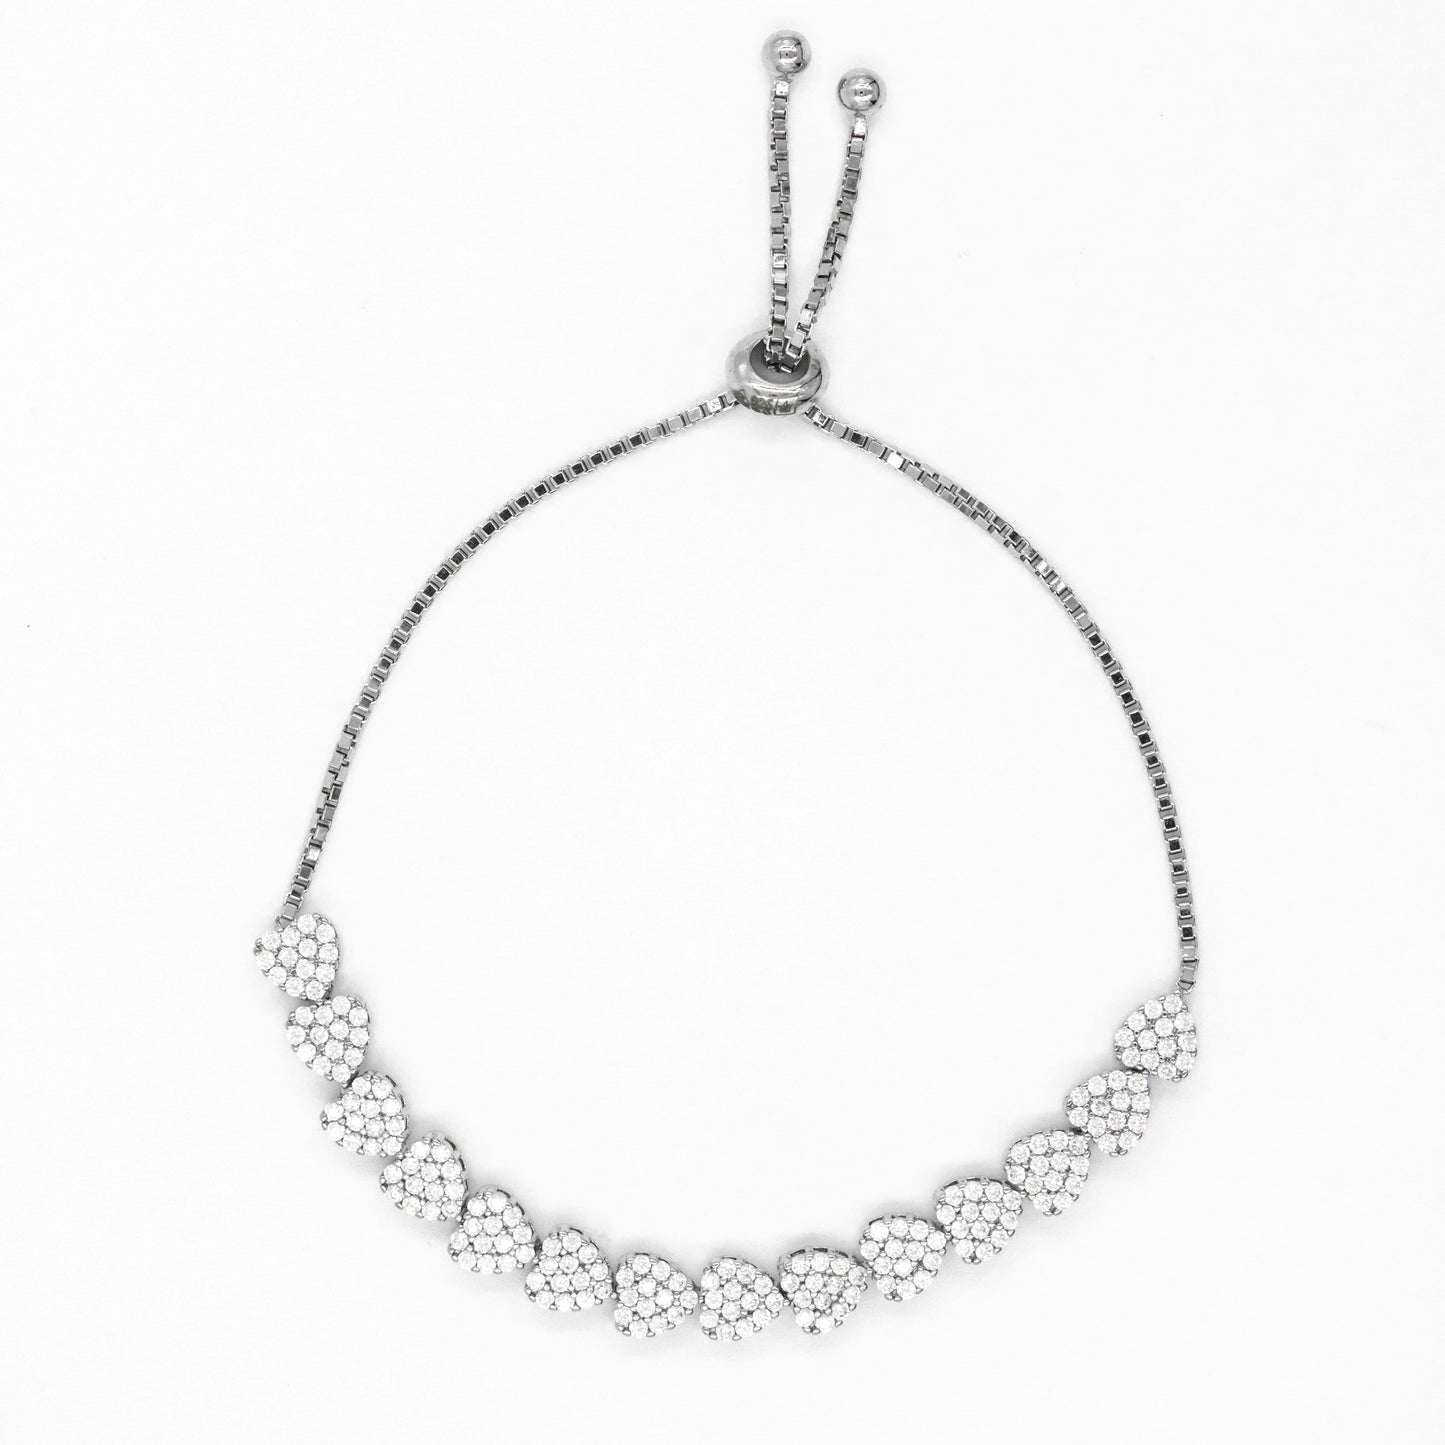 Silver Classic Heart Link Bracelet